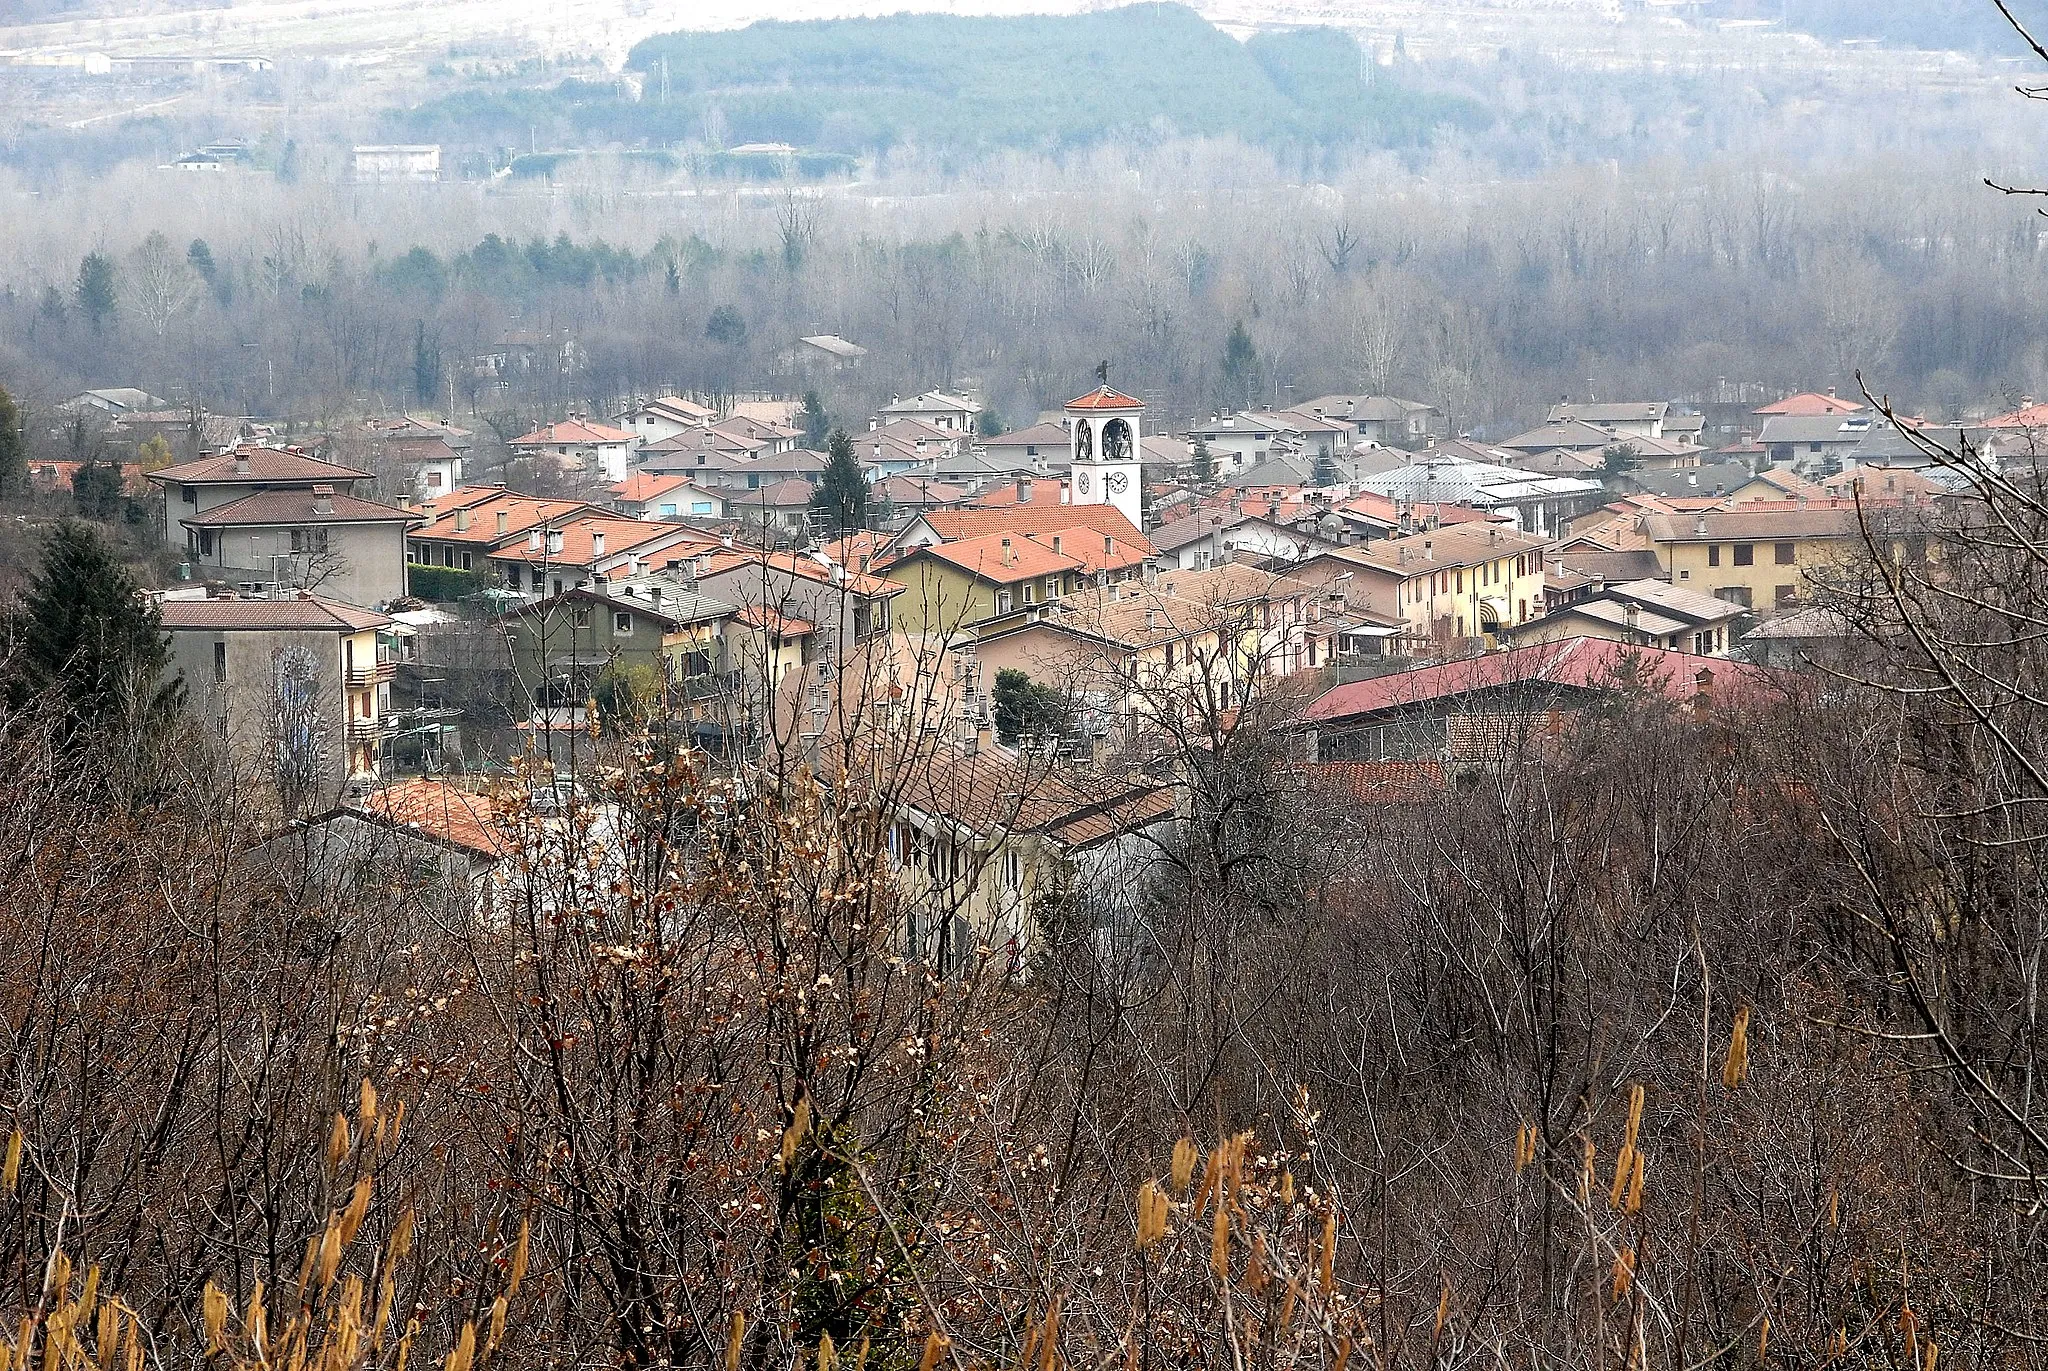 Photo showing: Community and village Bordano in the state Friuli-Venezia Giulia, Italy